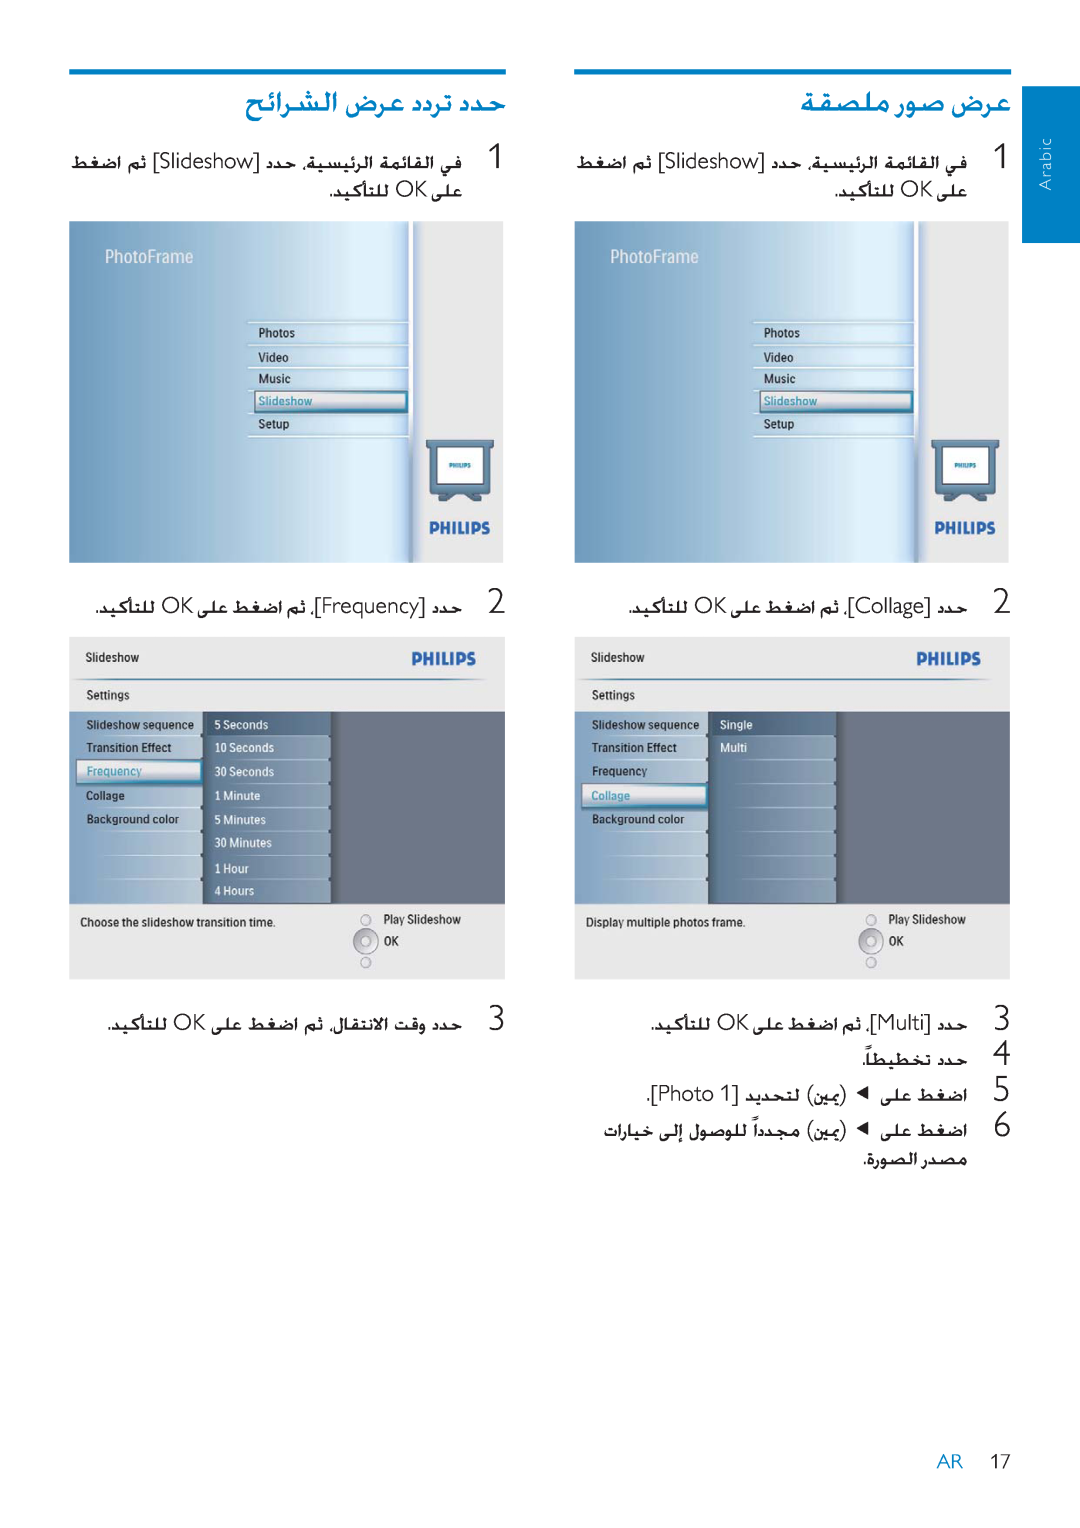 Philips SPF2007 manual ǉǣȚǍƪŽȚȩǍŸȢȢǍůȢǋŲ, ǀƲƫƴžȤǞǧȩǍŸ, Photo 1ǋƁǋƇƄŽ ƞƚ ǟƴŸǓưǤȚ, ȜȤǞƫŽȚȤǋƫž, Arabic 